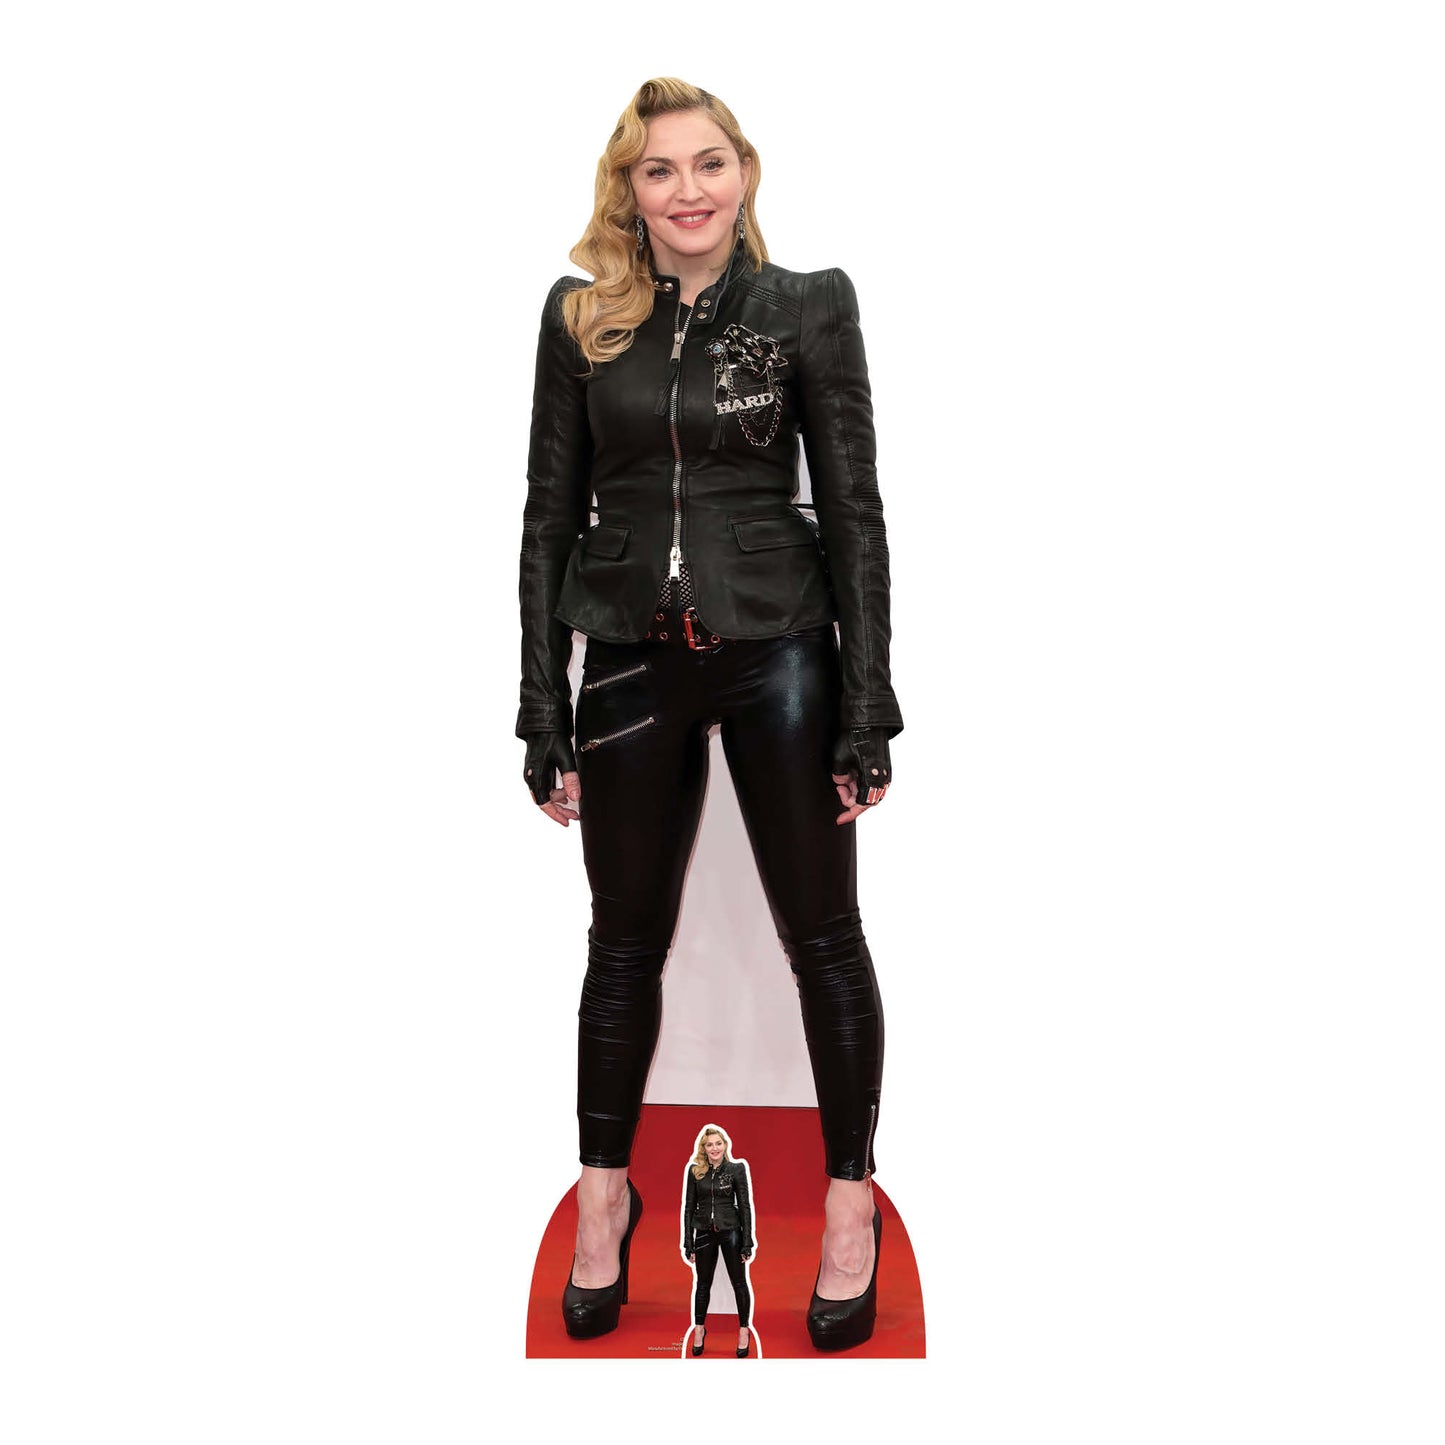 Madonna Cardboard Cutout Lifesize